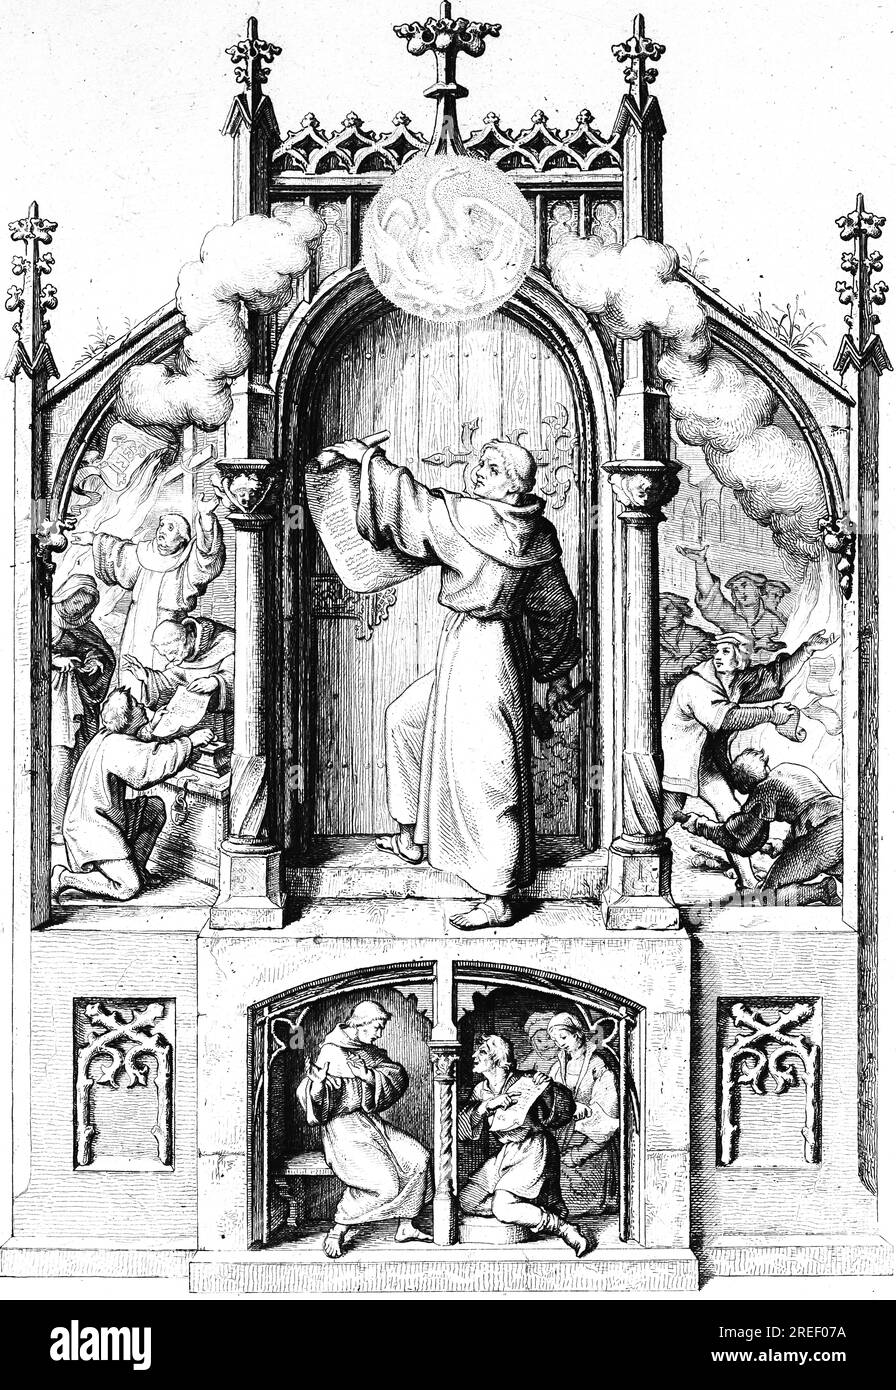 Martin Luther schlägt die 95 Thesen an der Kirchentür in Wittenberg zu (Hauptbild), Verwöhnprediger Tezel (links), Wittenberg-Studenten verbrennen Tezel's Stockfoto